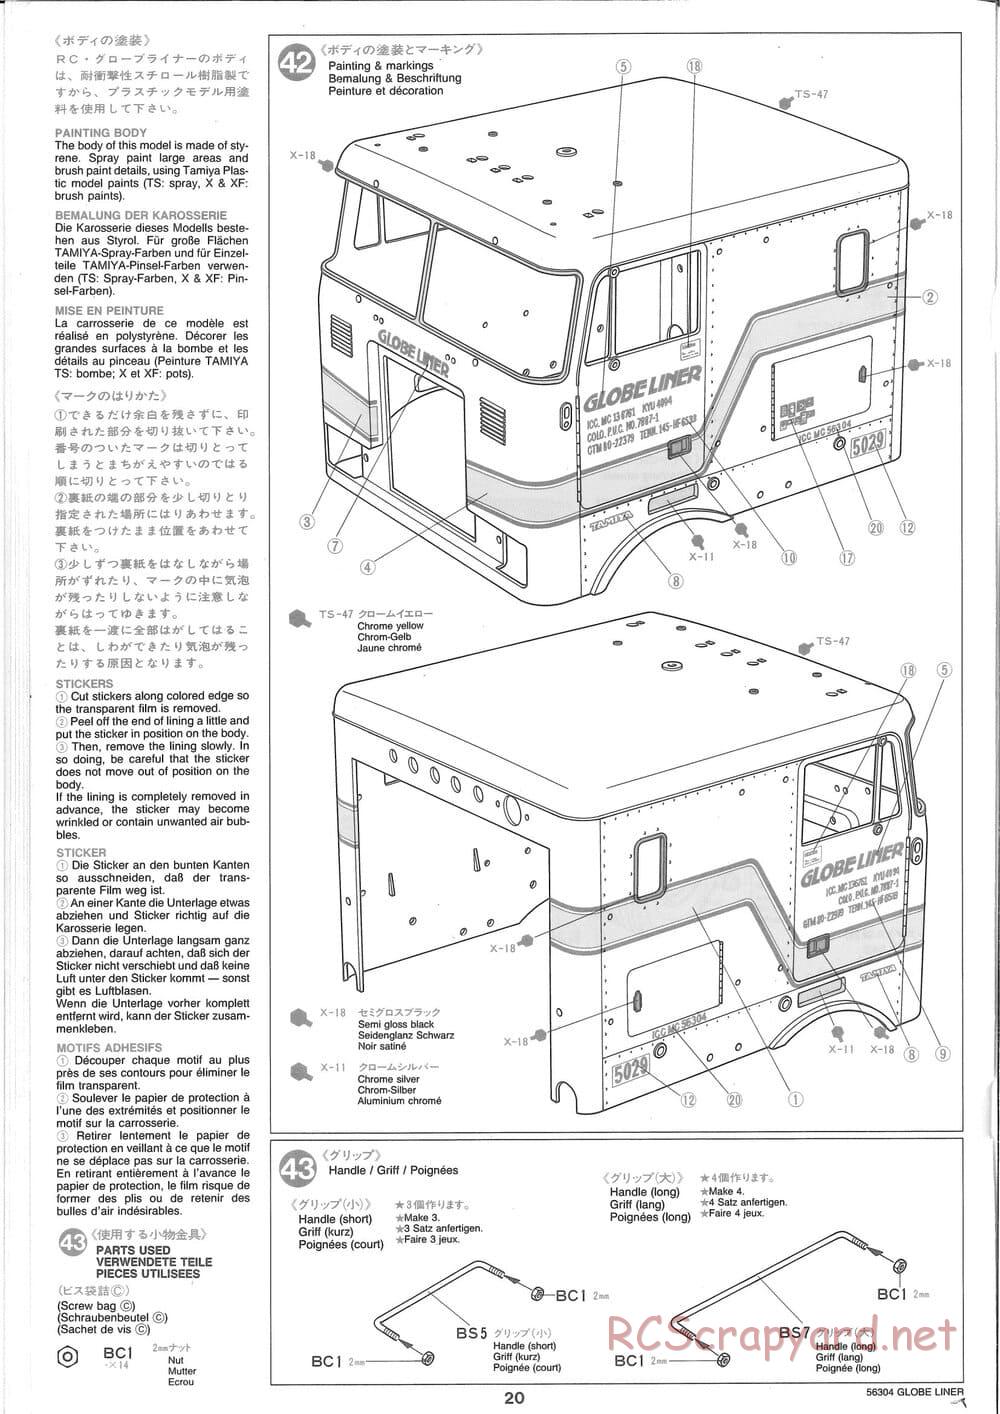 Tamiya - Globe Liner - Manual - Page 20